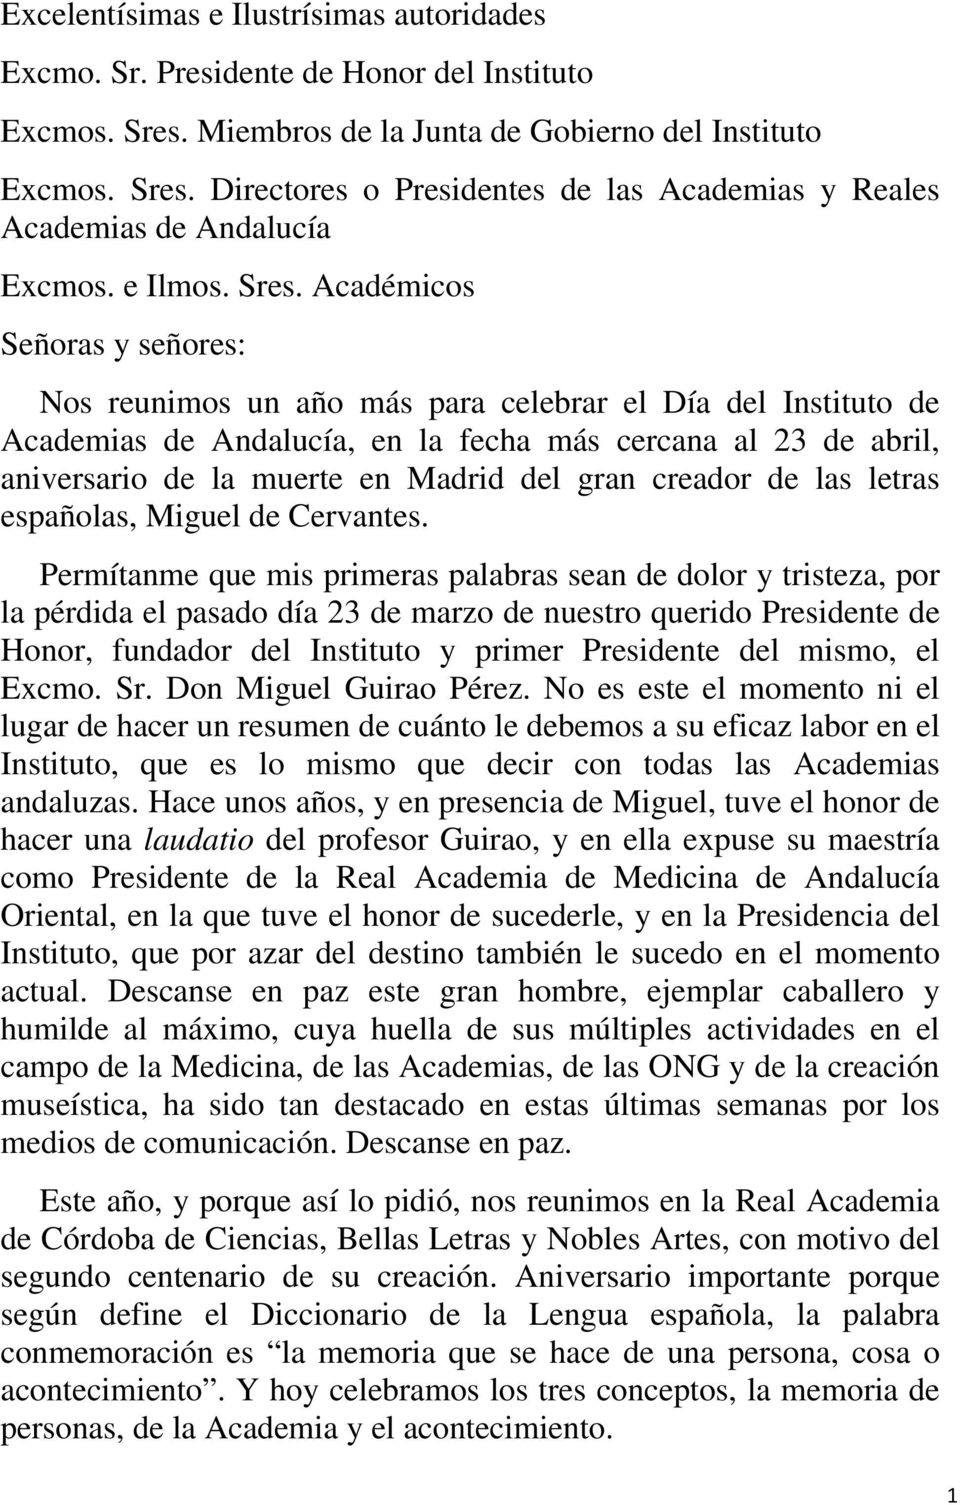 Académicos Señoras y señores: Nos reunimos un año más para celebrar el Día del Instituto de Academias de Andalucía, en la fecha más cercana al 23 de abril, aniversario de la muerte en Madrid del gran